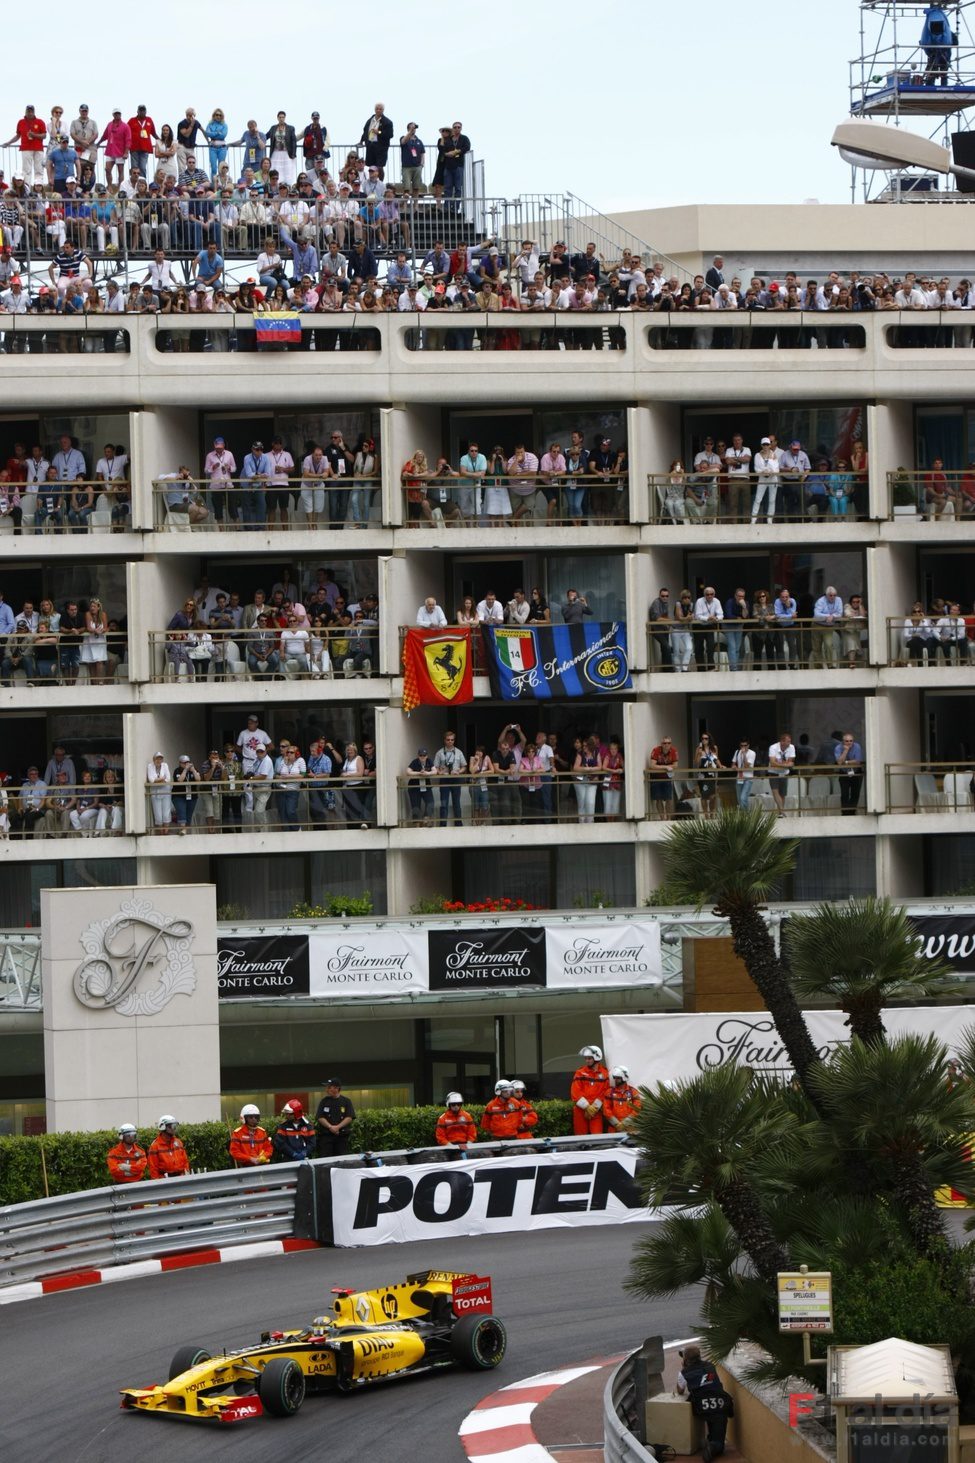 Los balcones a reventar de público en Mónaco